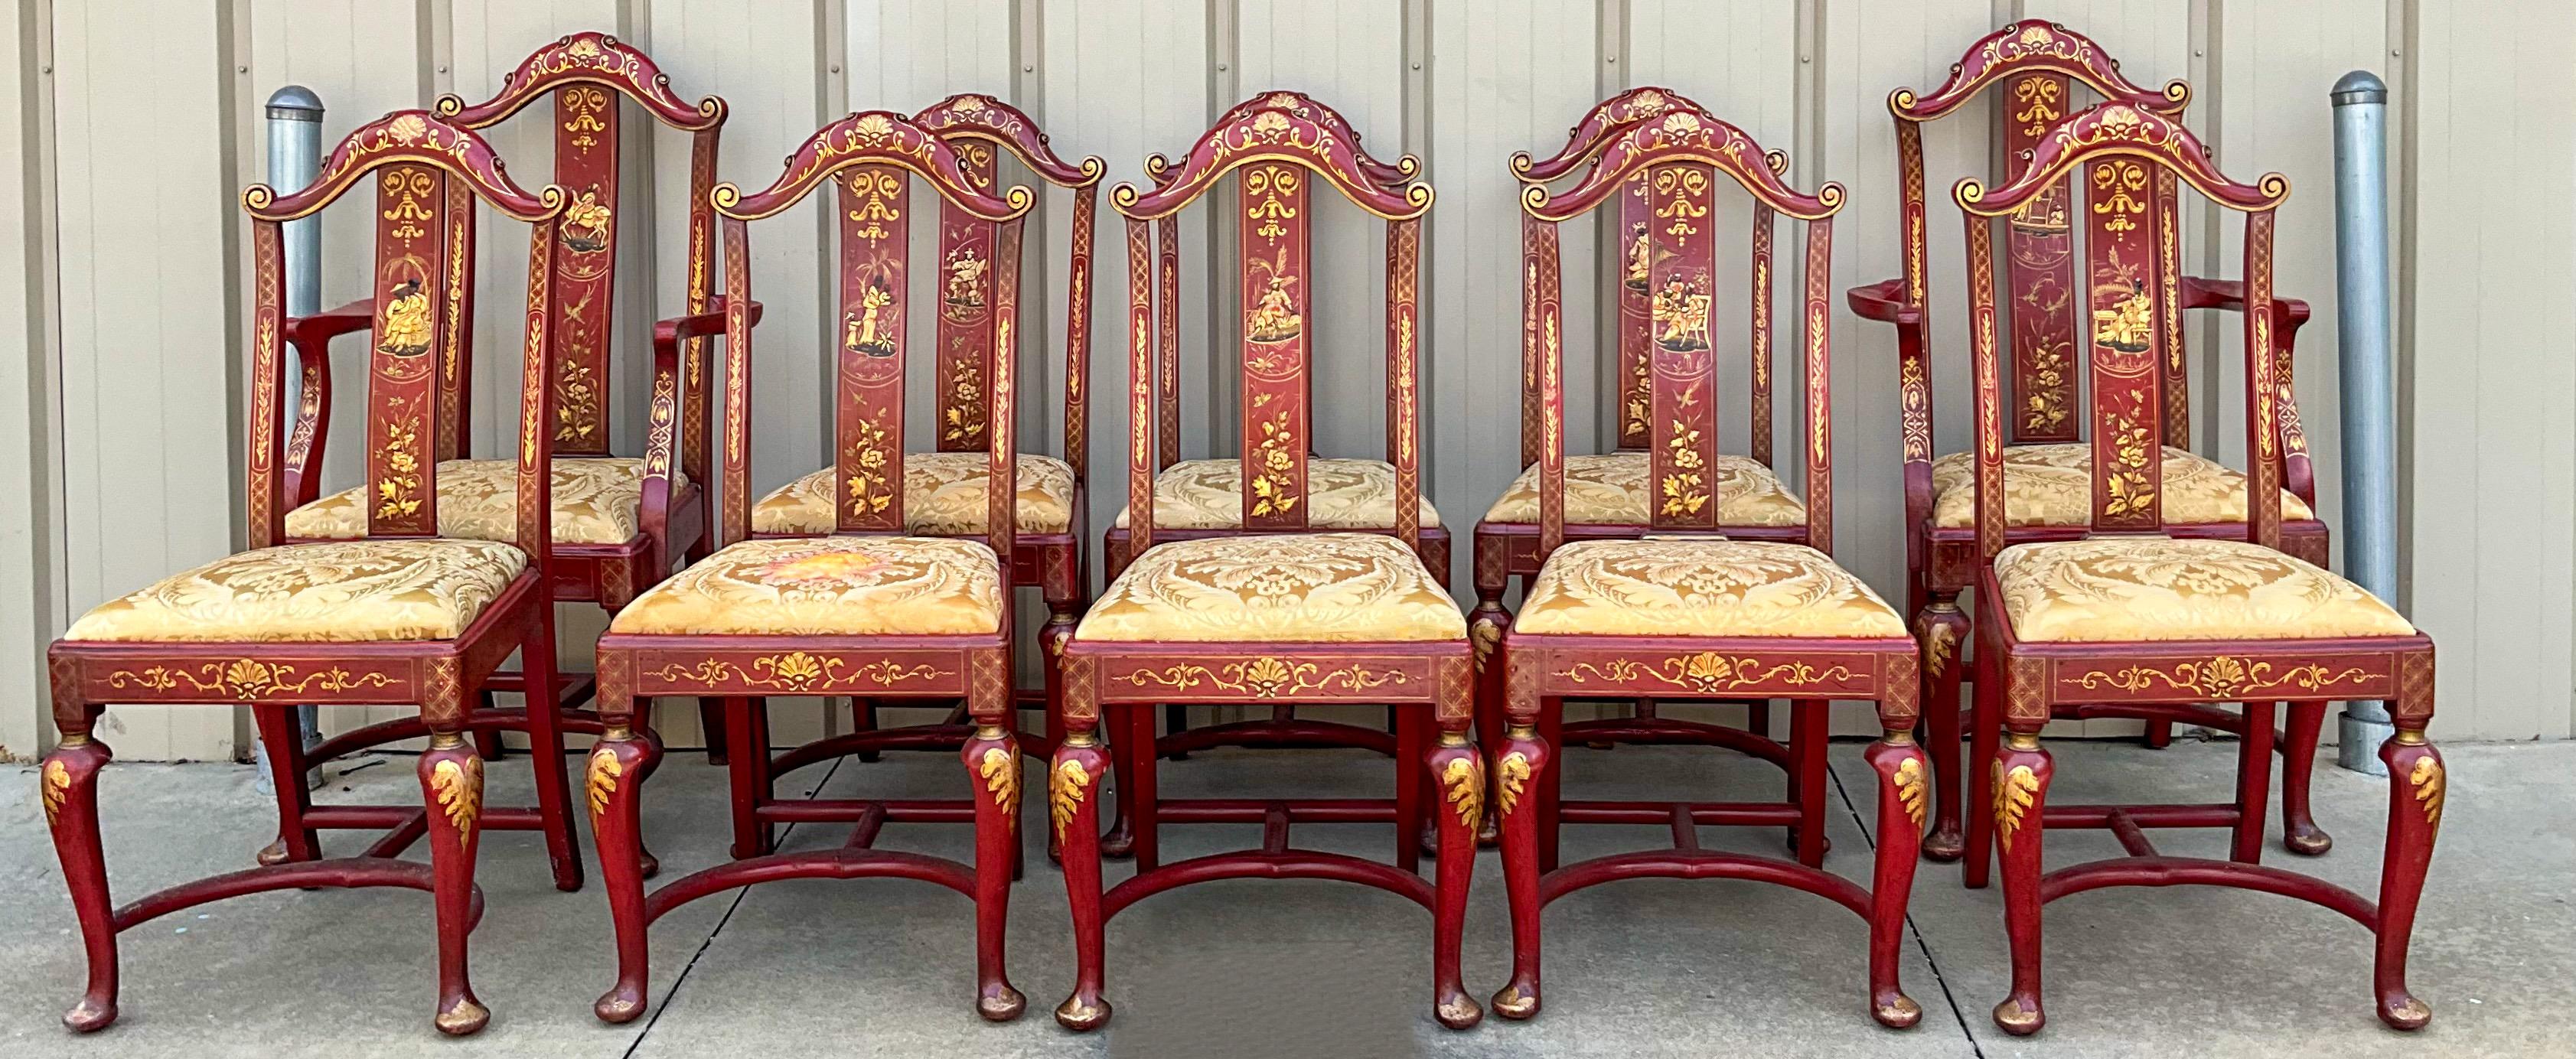 Voici un fabuleux ensemble de chaises de salle à manger chinoises de style Queen Anne. Chacune est peinte à la main avec une scène pastorale unique et des accents dorés. Malheureusement, deux sièges présentent des signes d'usure, dont l'un est